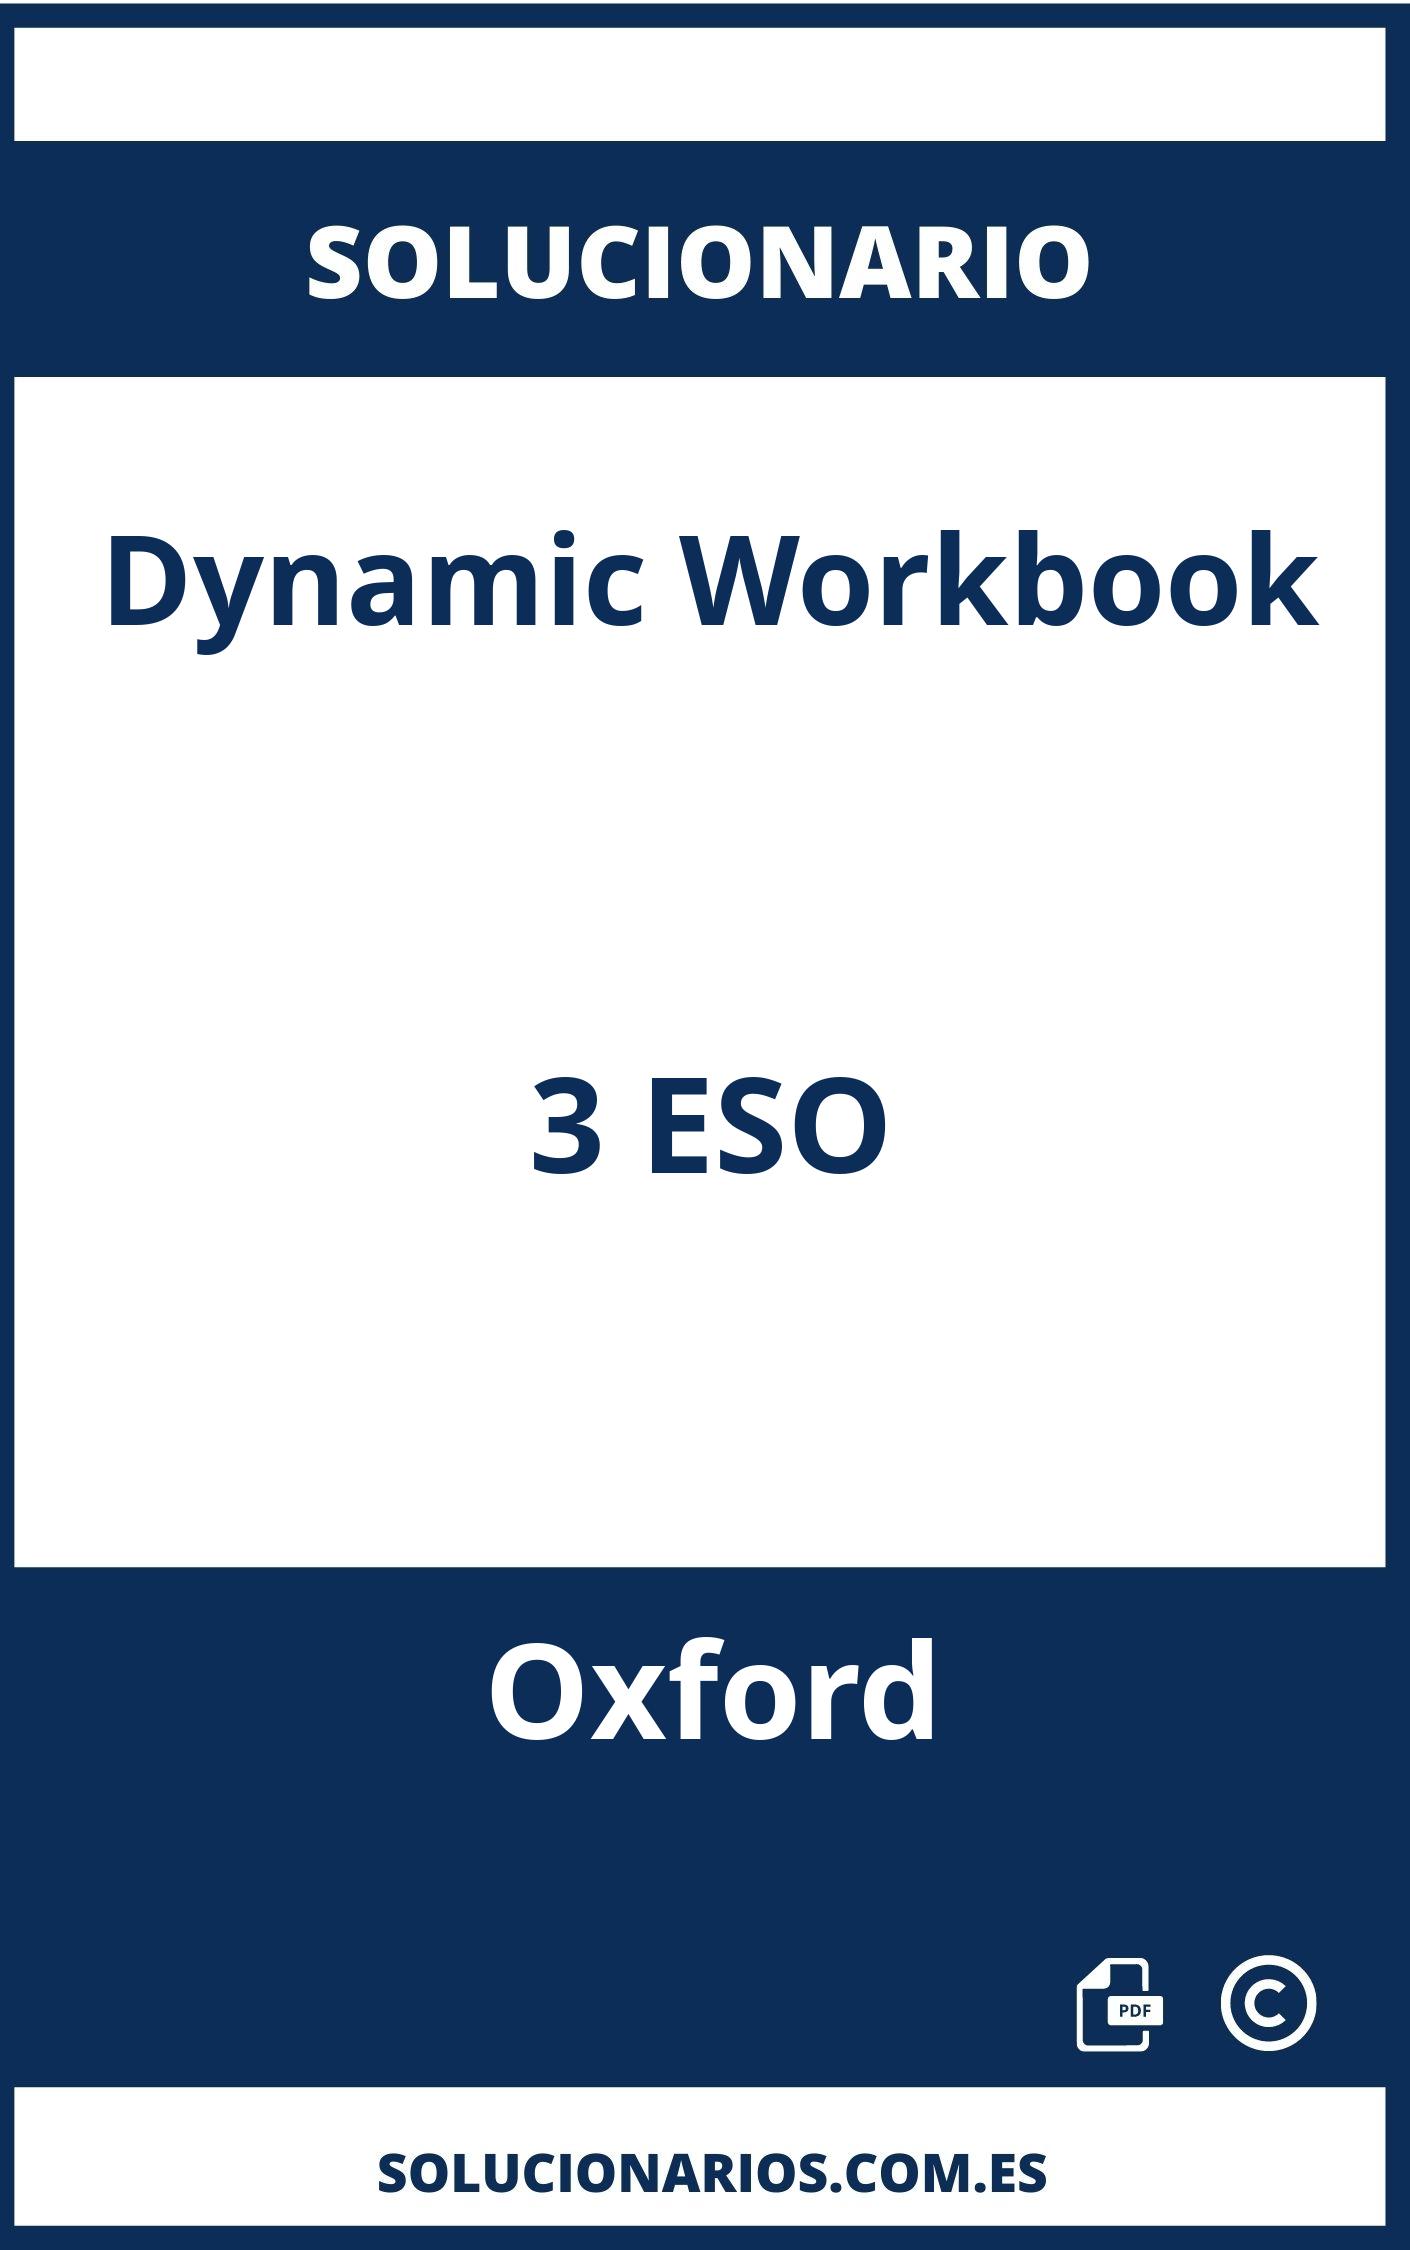 Solucionario Dynamic Workbook 3 ESO Oxford